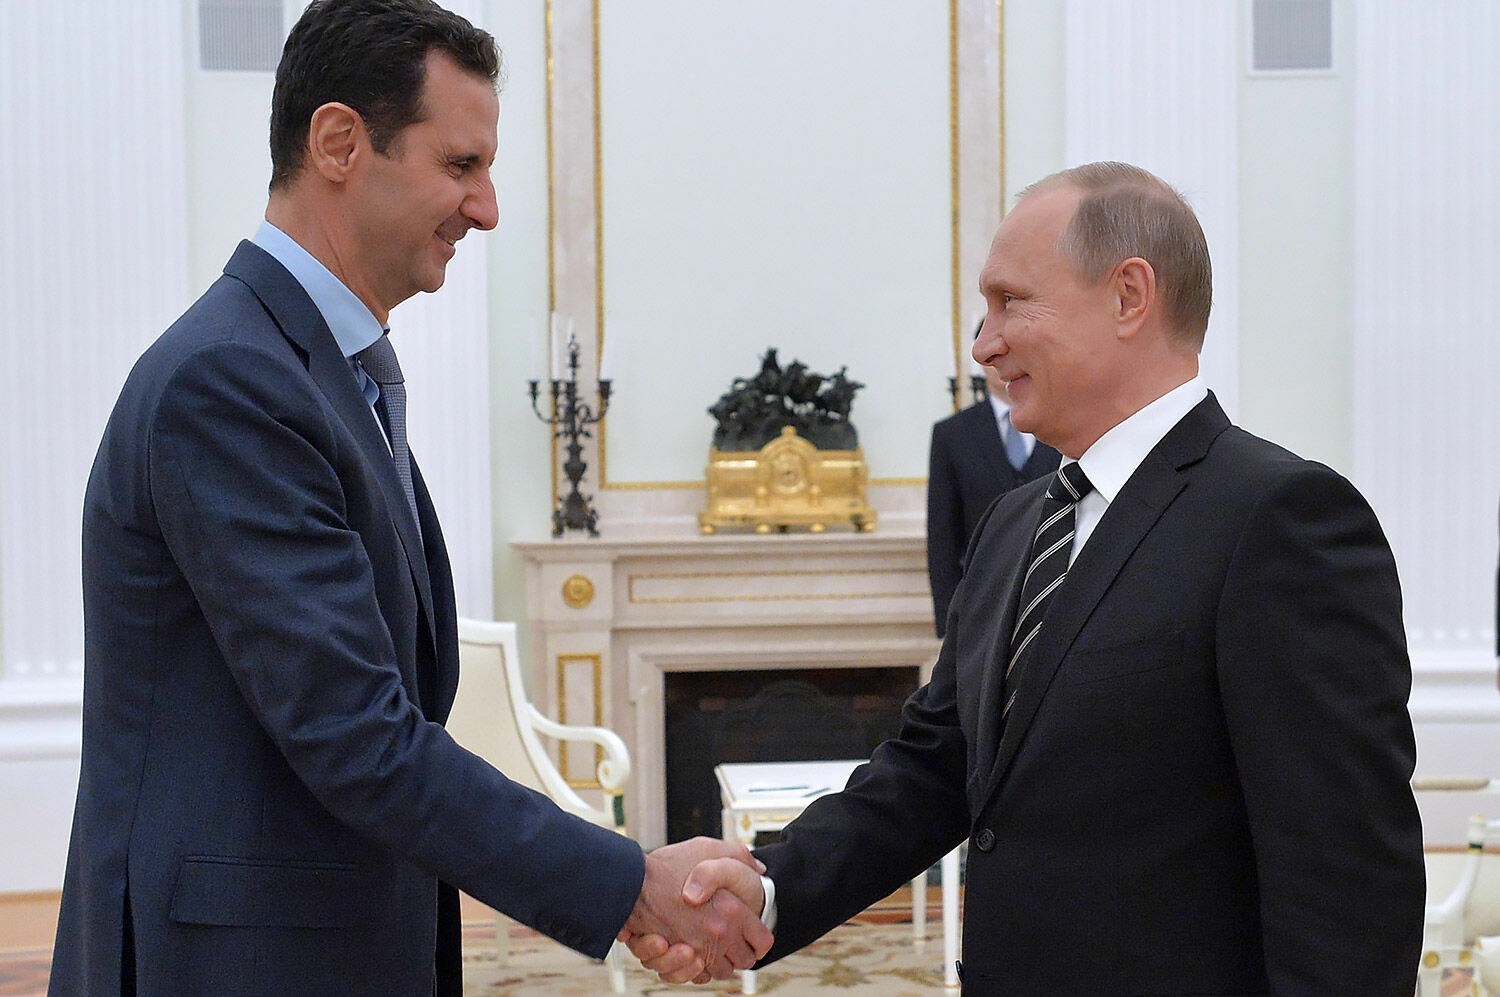 Vladimir Putin held talks with Bashar al-Assad in the Kremlin